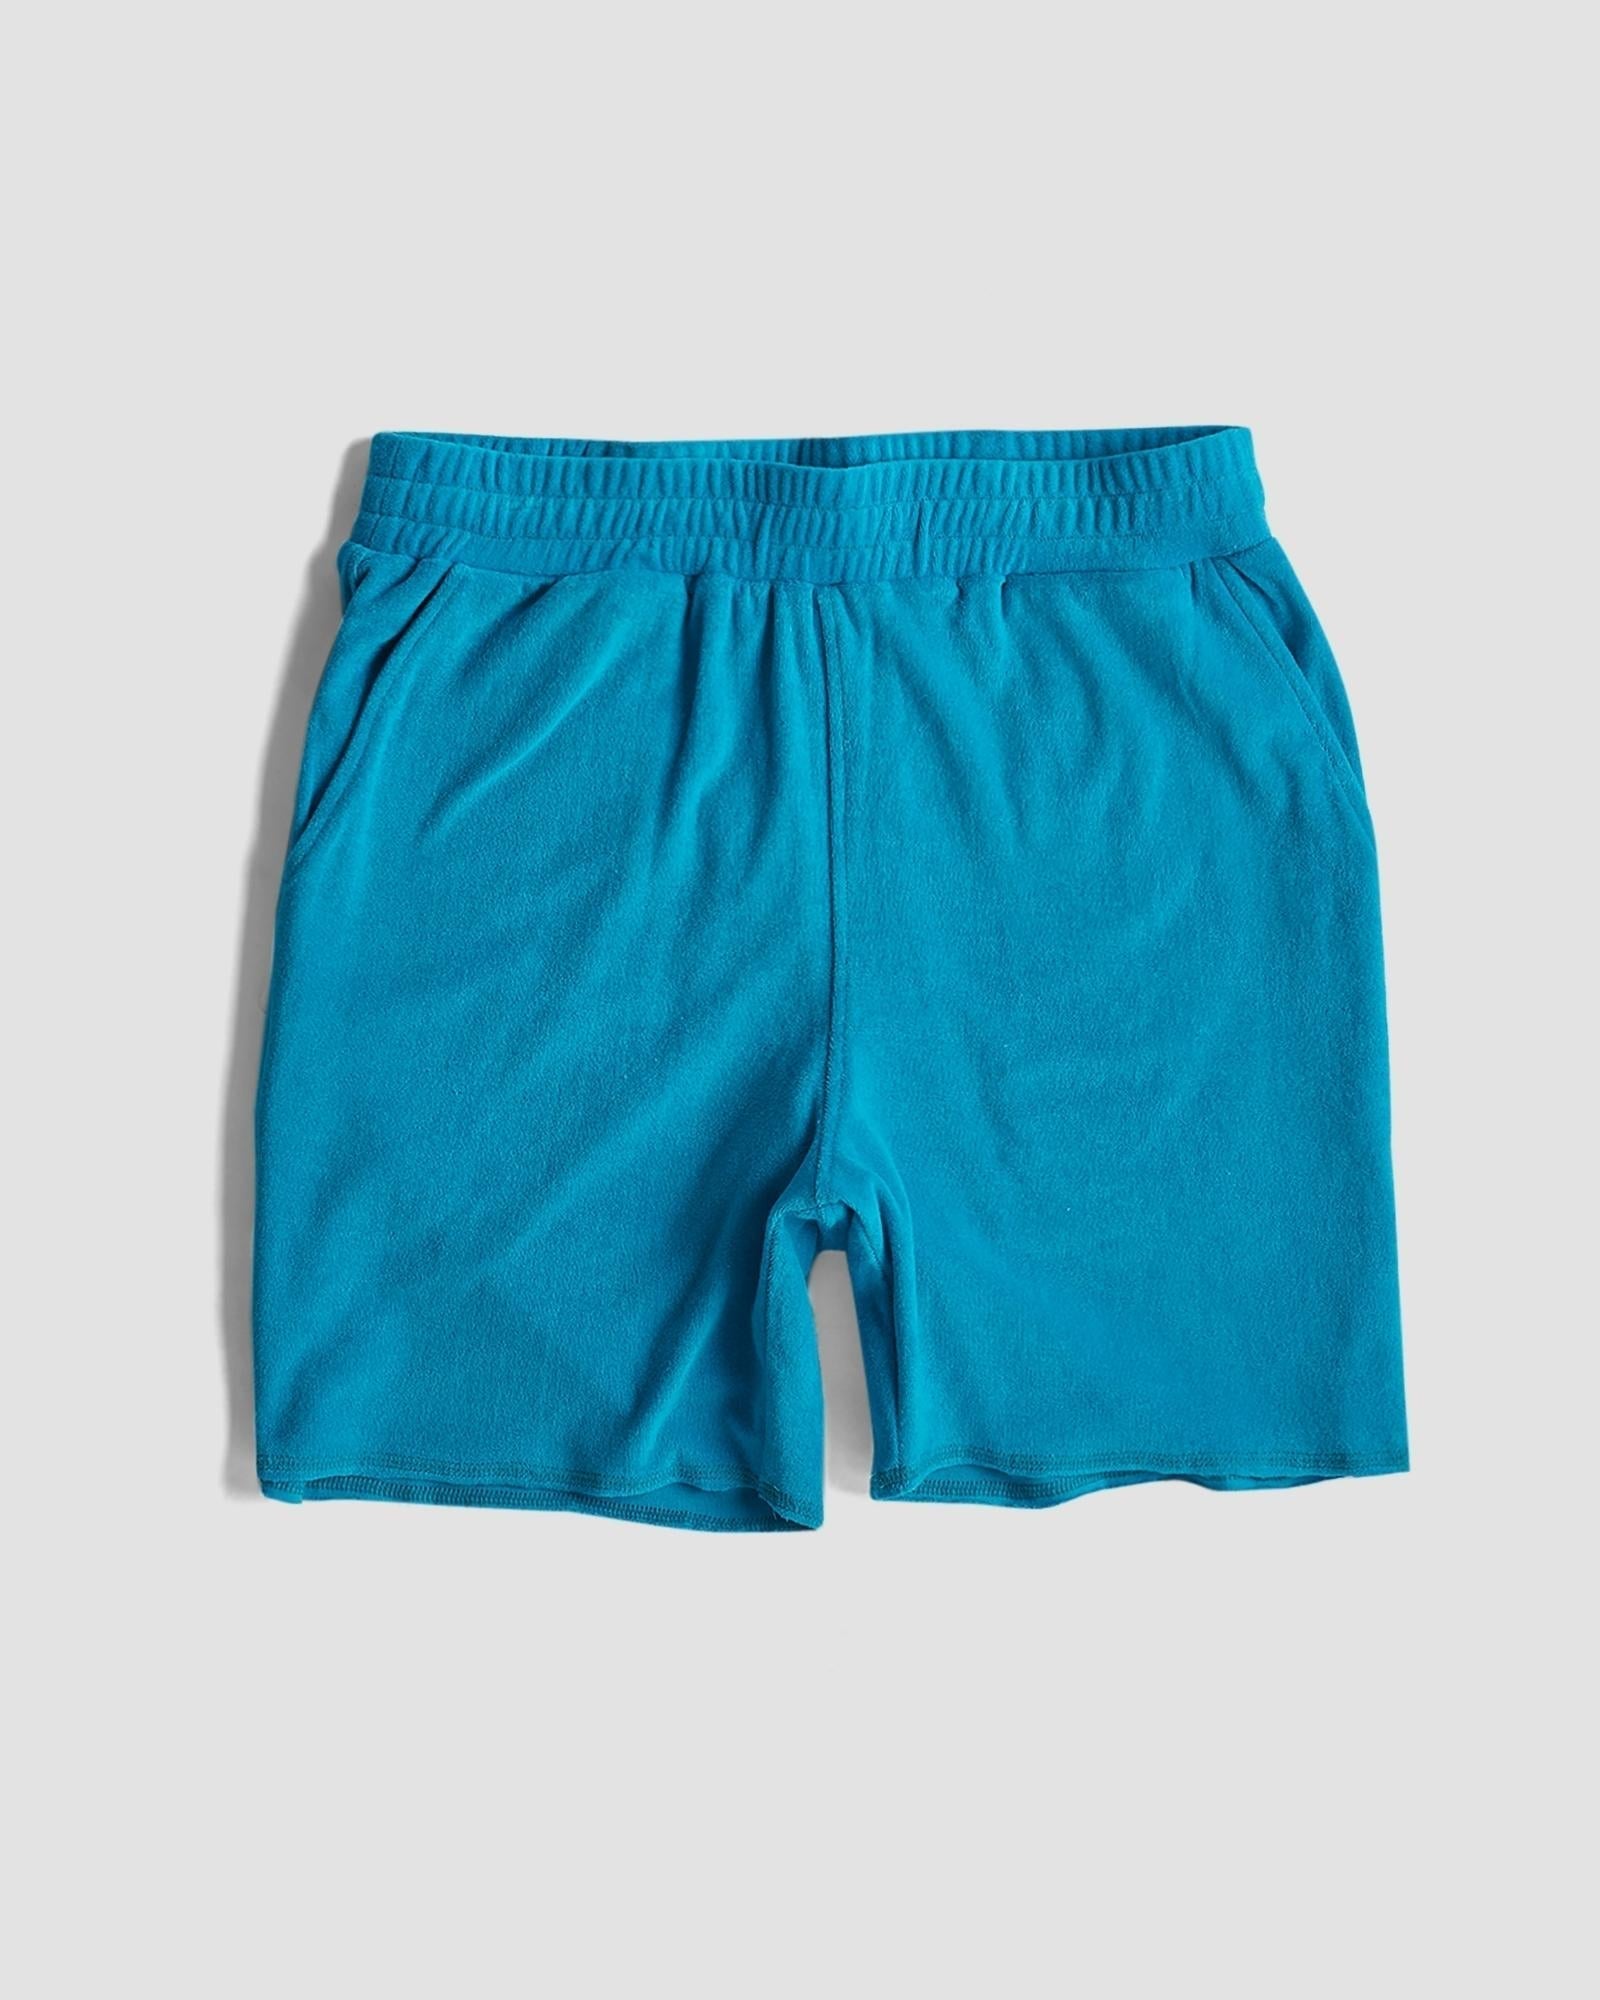 cityof_ - Terry Towel Shorts